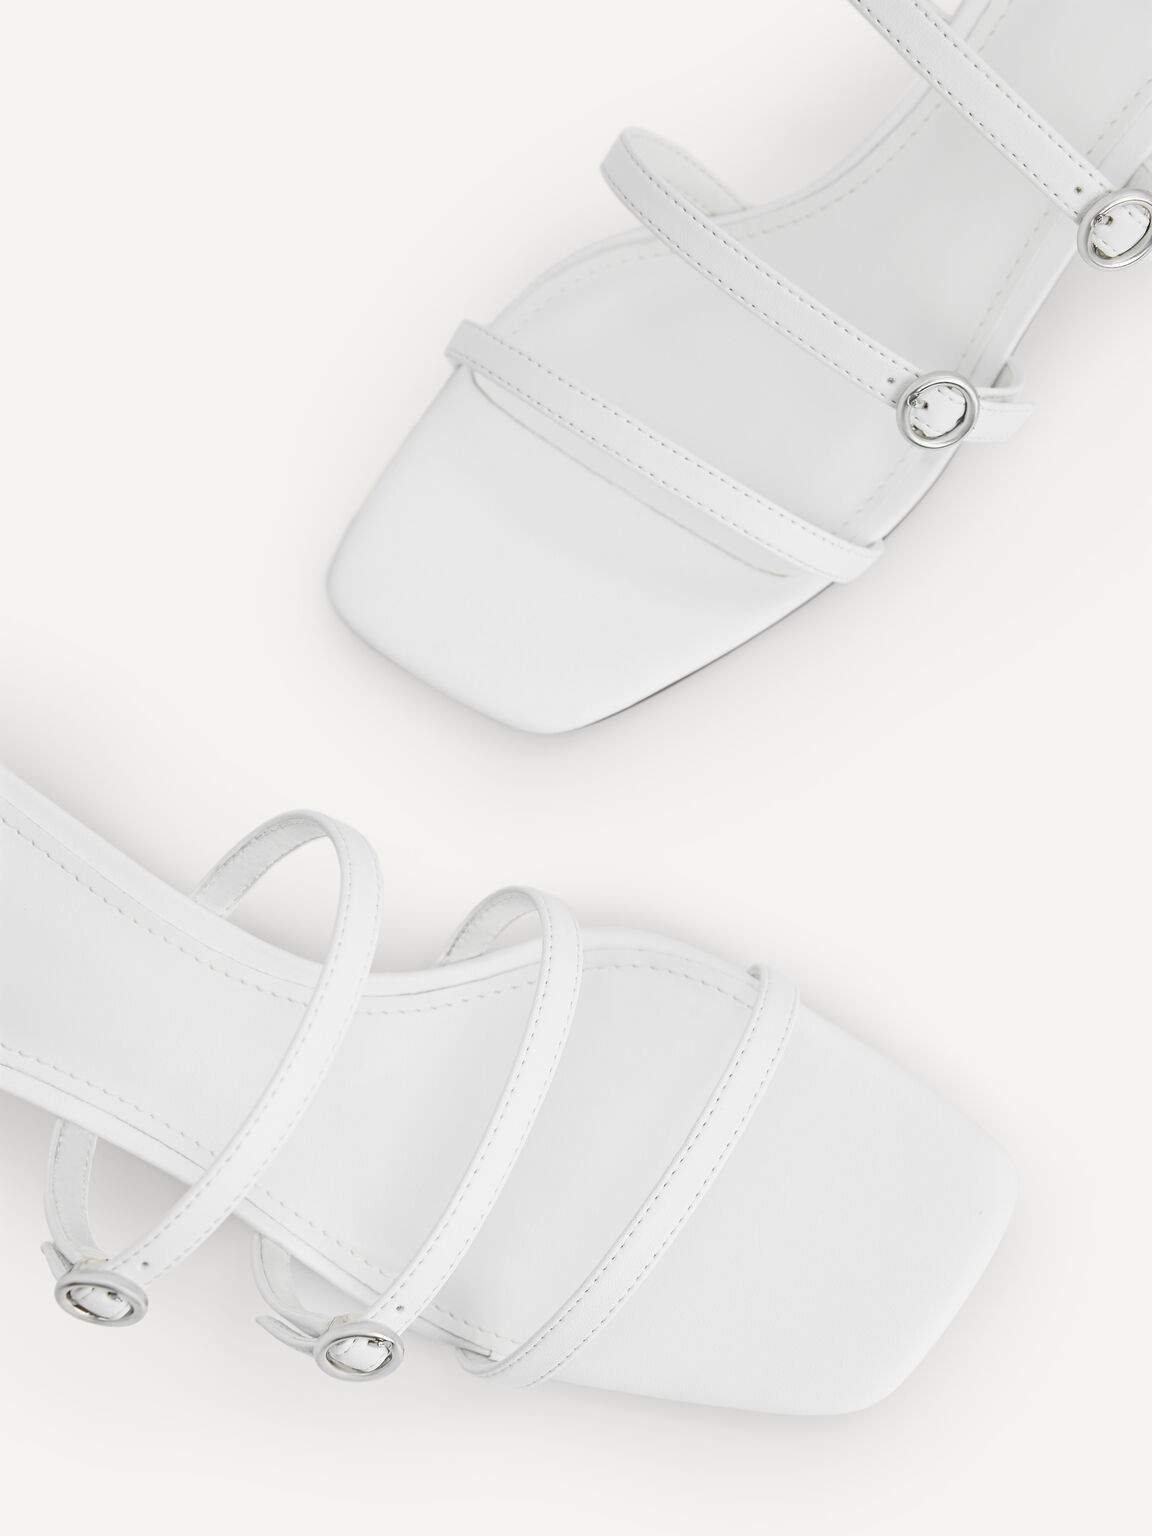 Strappy Heel Sandals, White